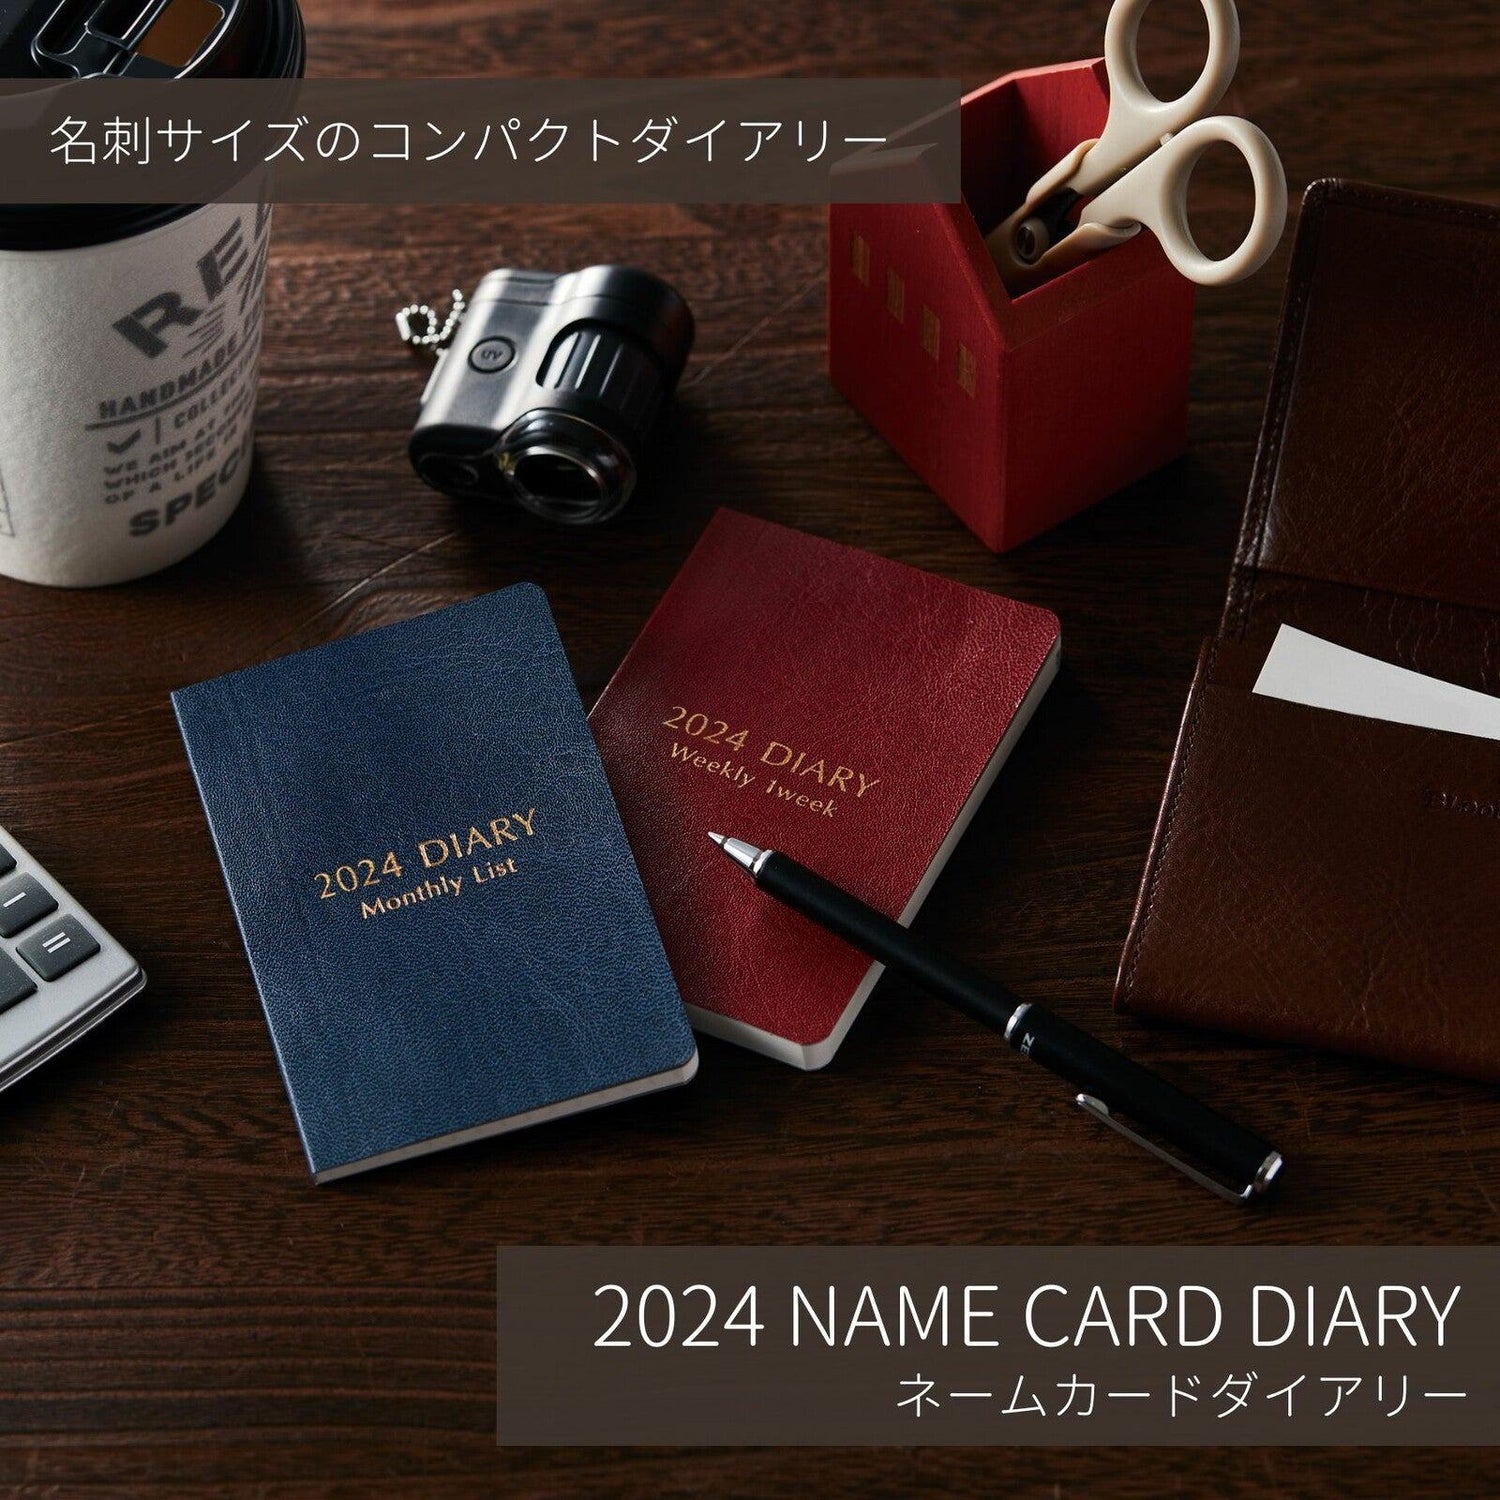 2024 Name Card Diary - Weekly Left - Techo Treats